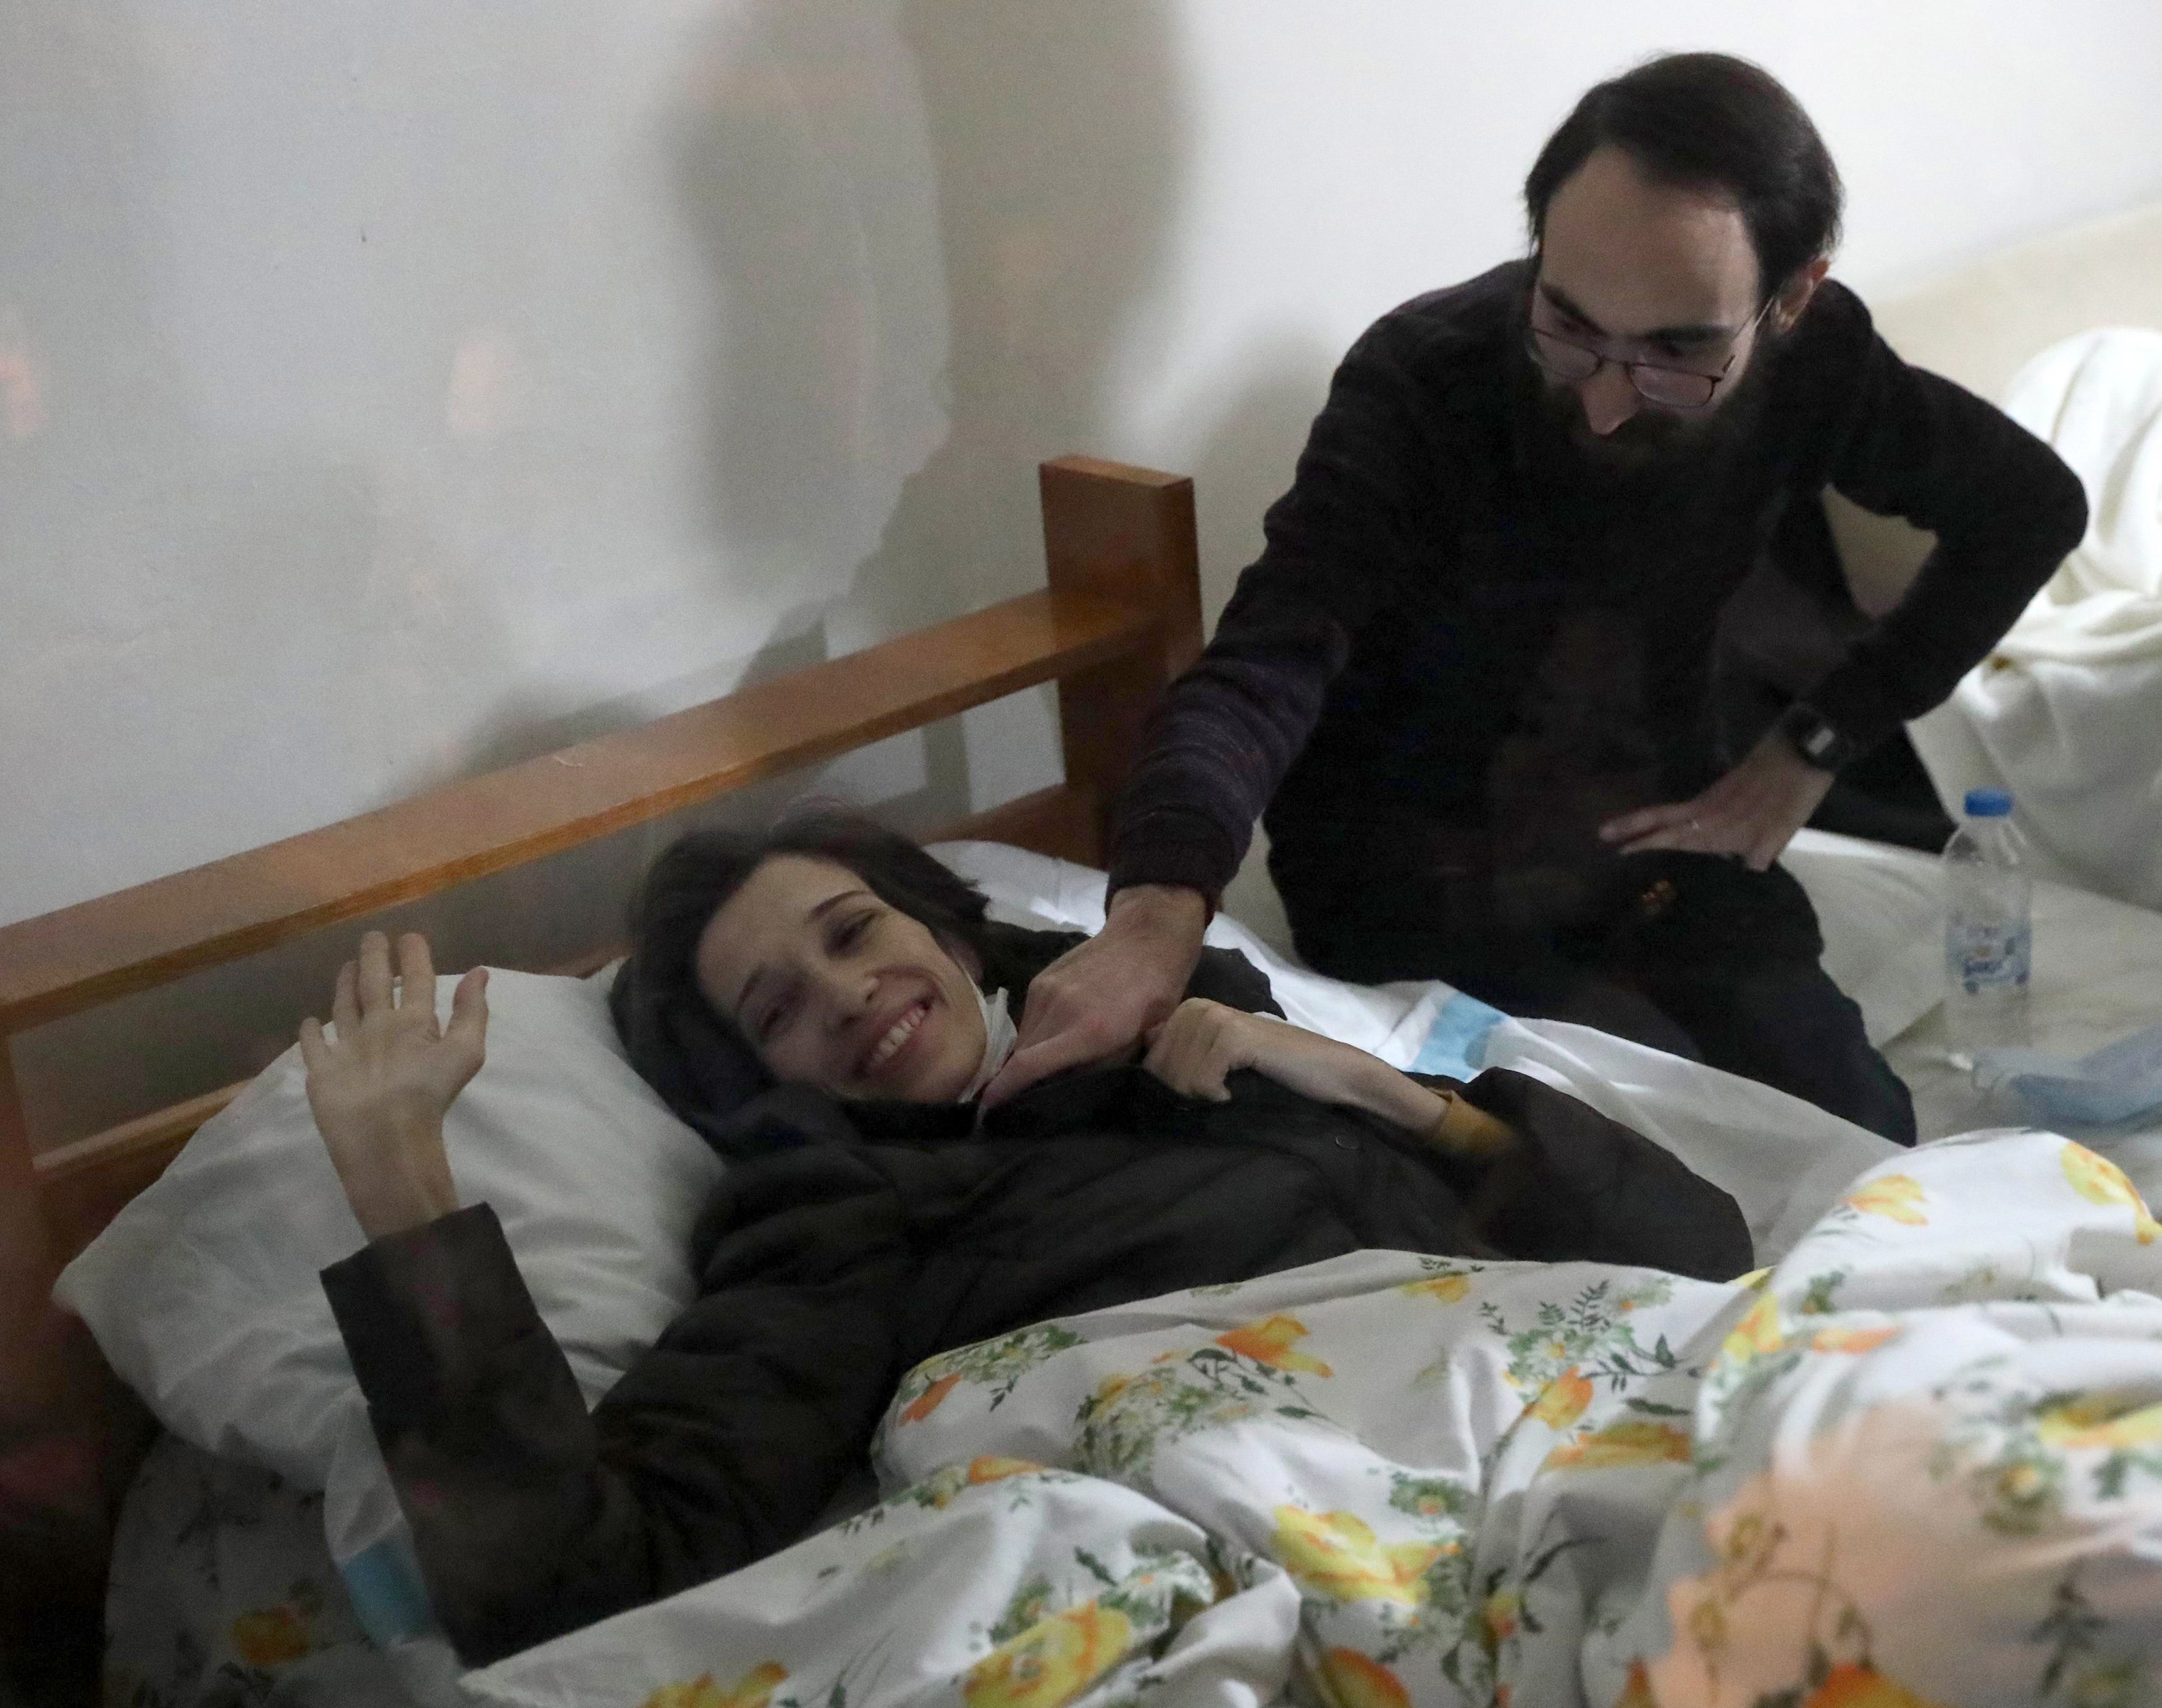 نوريا جولمن التى افرجت عنها محكمة تركية  على السرير بسبب اضرابها عن الطعام